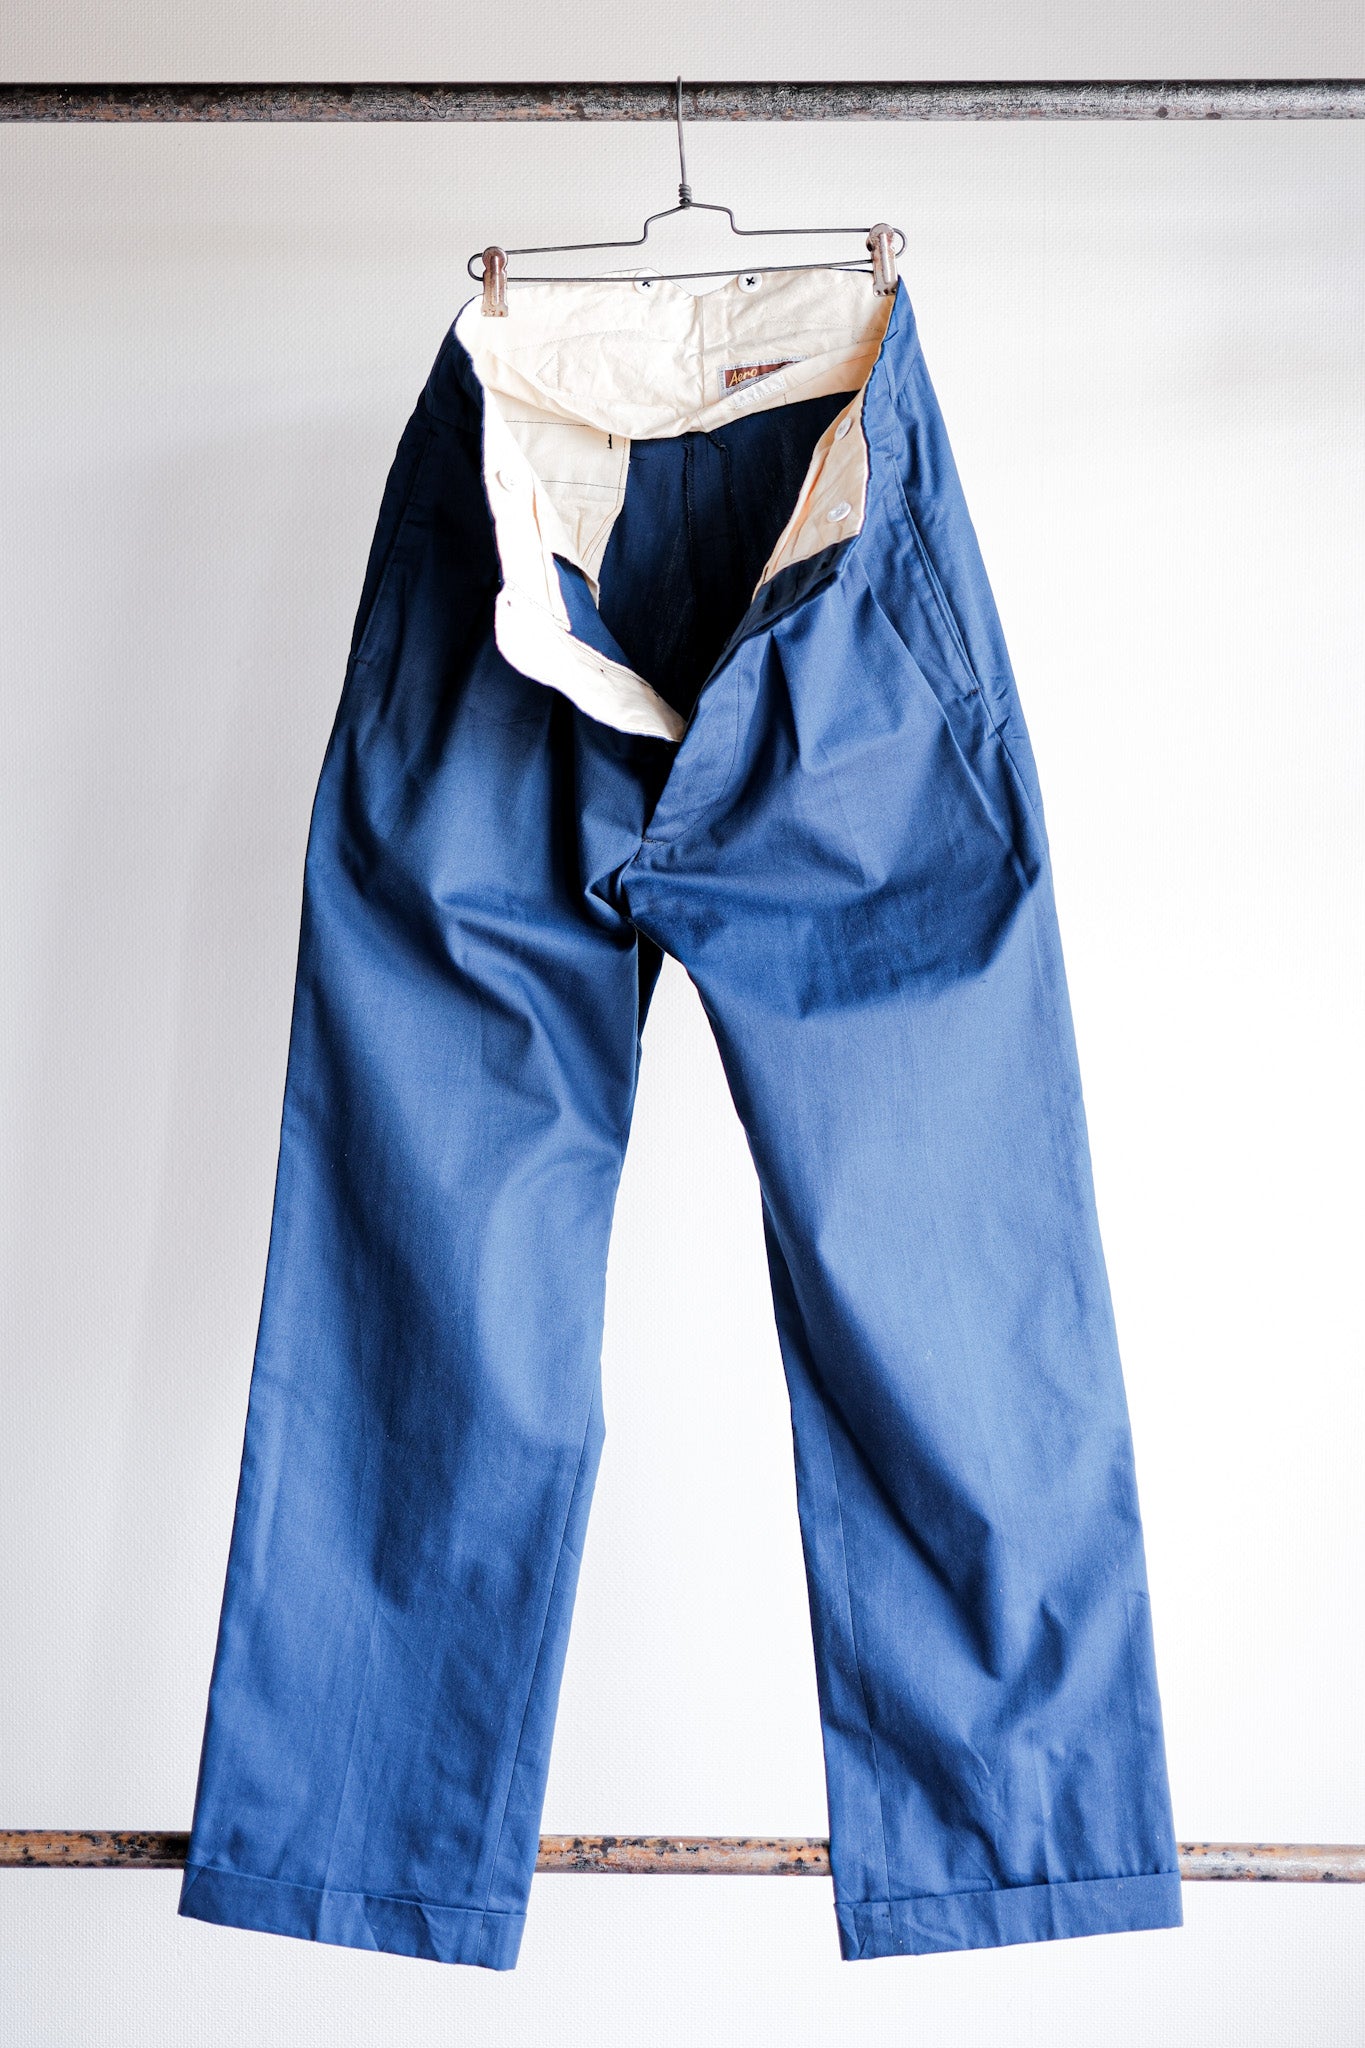 【~40's】British Vintage Blue Cotton Trousers "CC41" "Dead Stock"